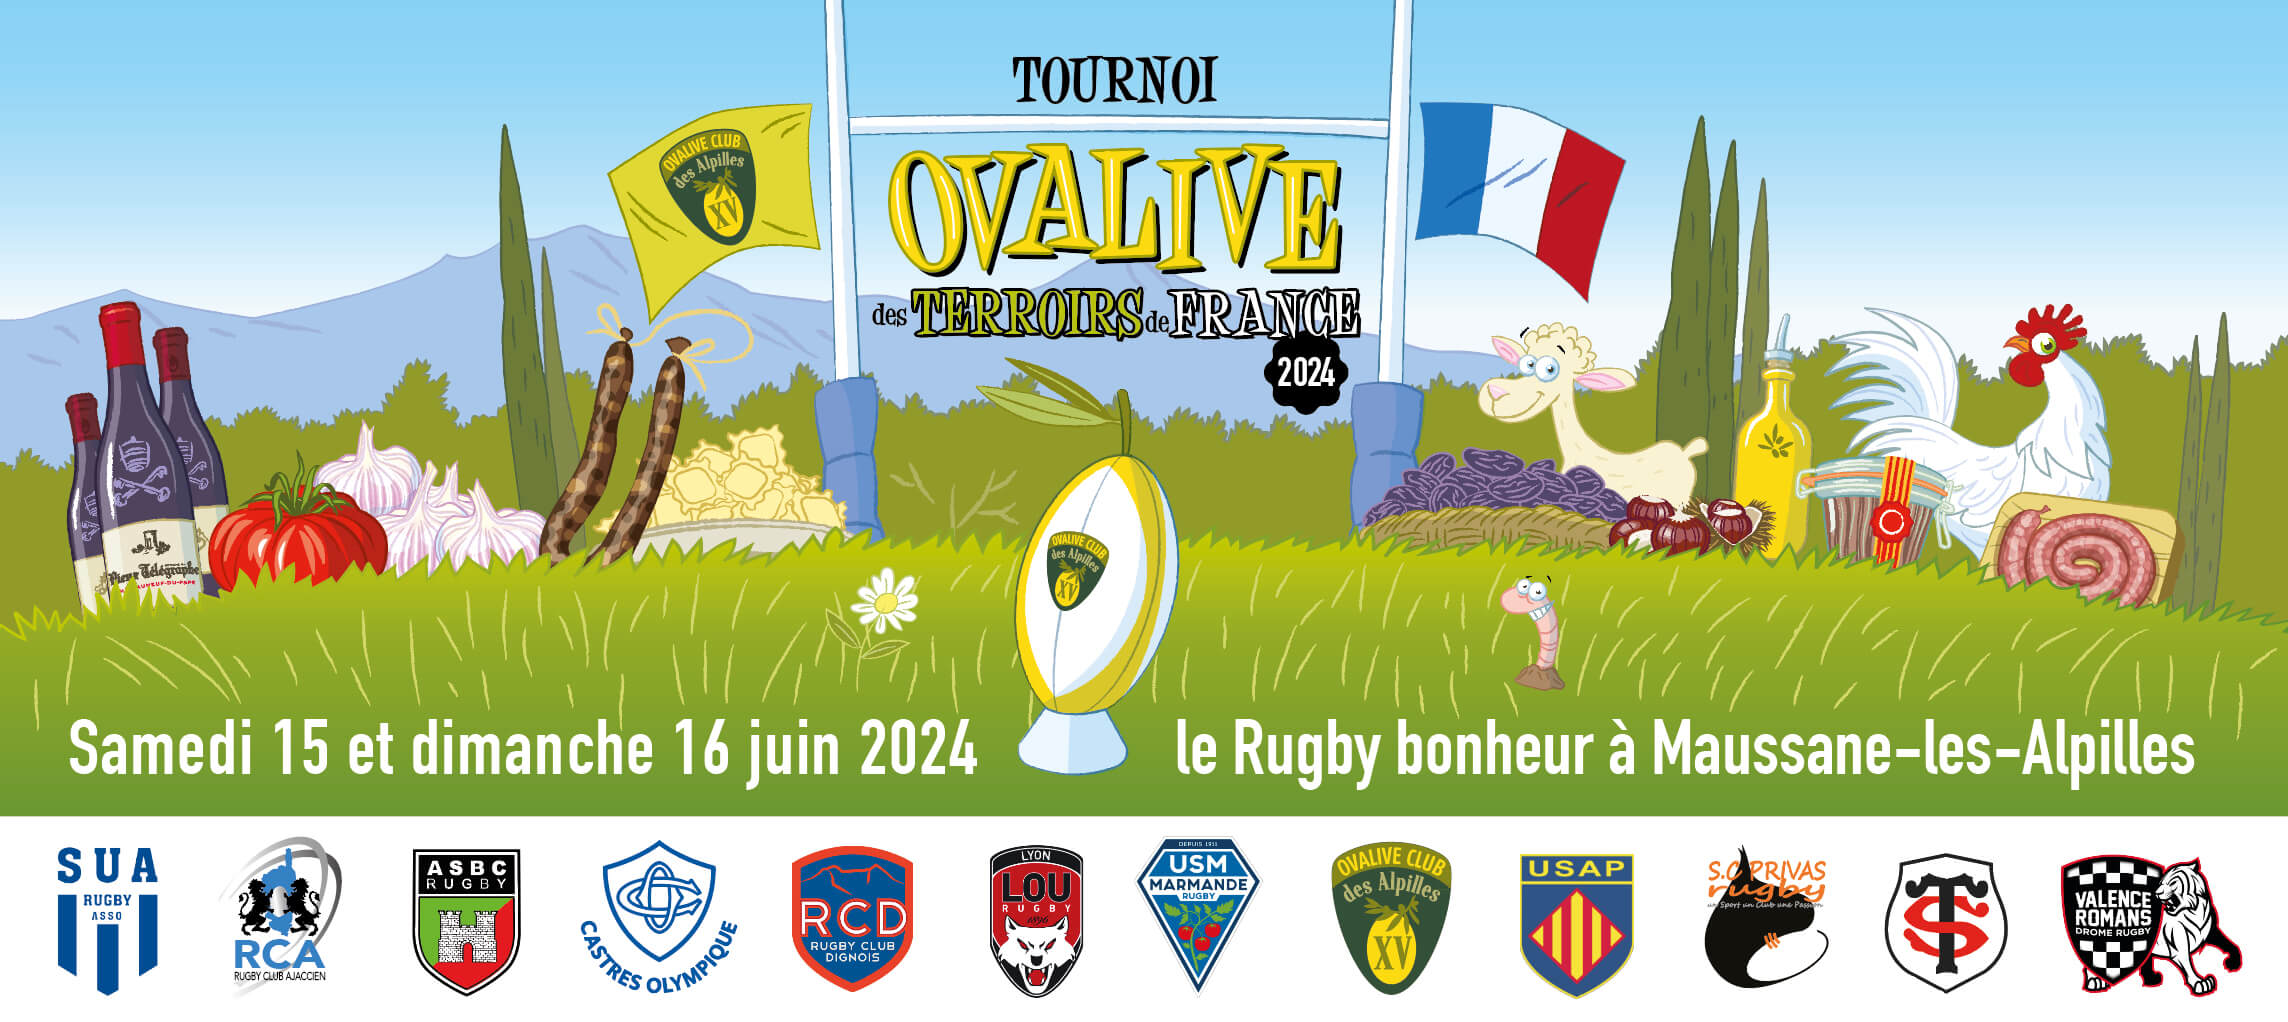 Tournoi de rugby Ovalive Terroirs du Monde 2024 à Maussane les Alpilles